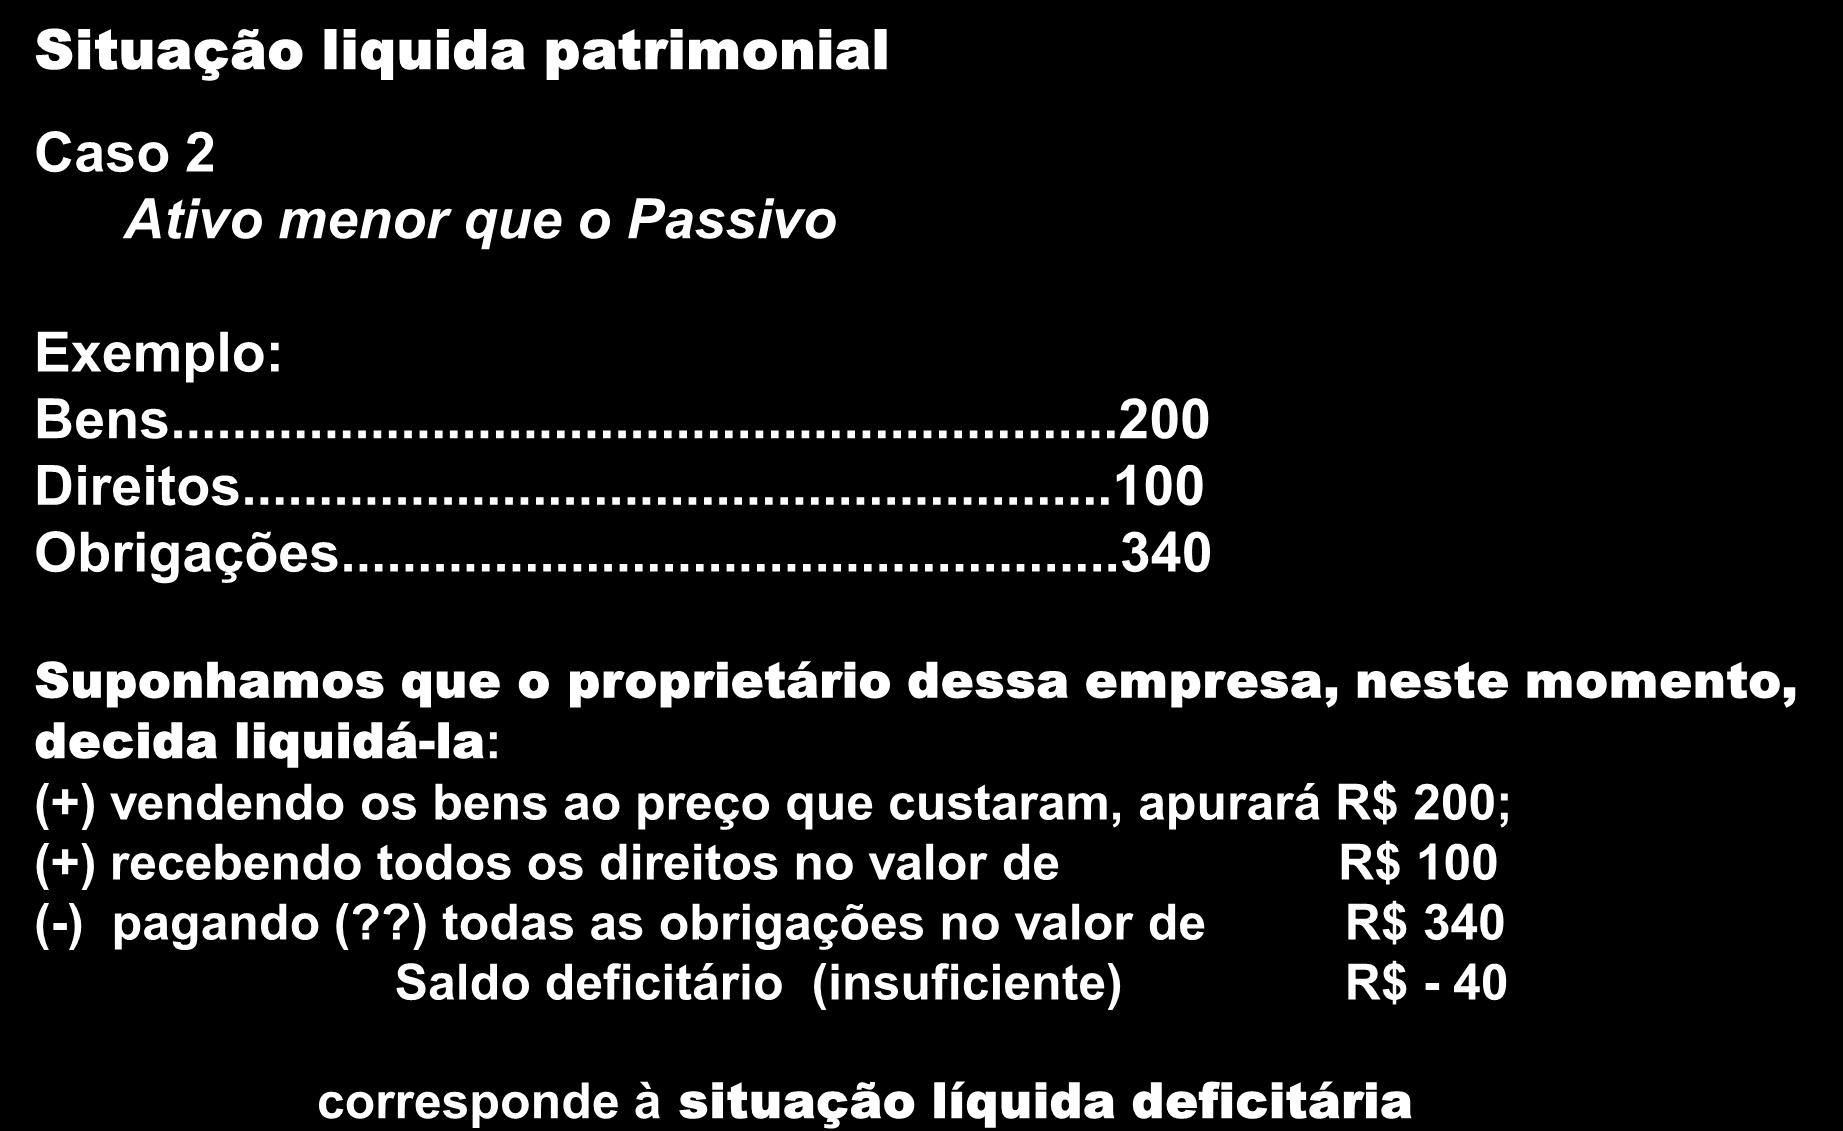 O Patrimônio Situação liquida patrimonial Caso 2 Ativo menor que o Passivo Exemplo: Bens...200 Direitos...100 Obrigações.